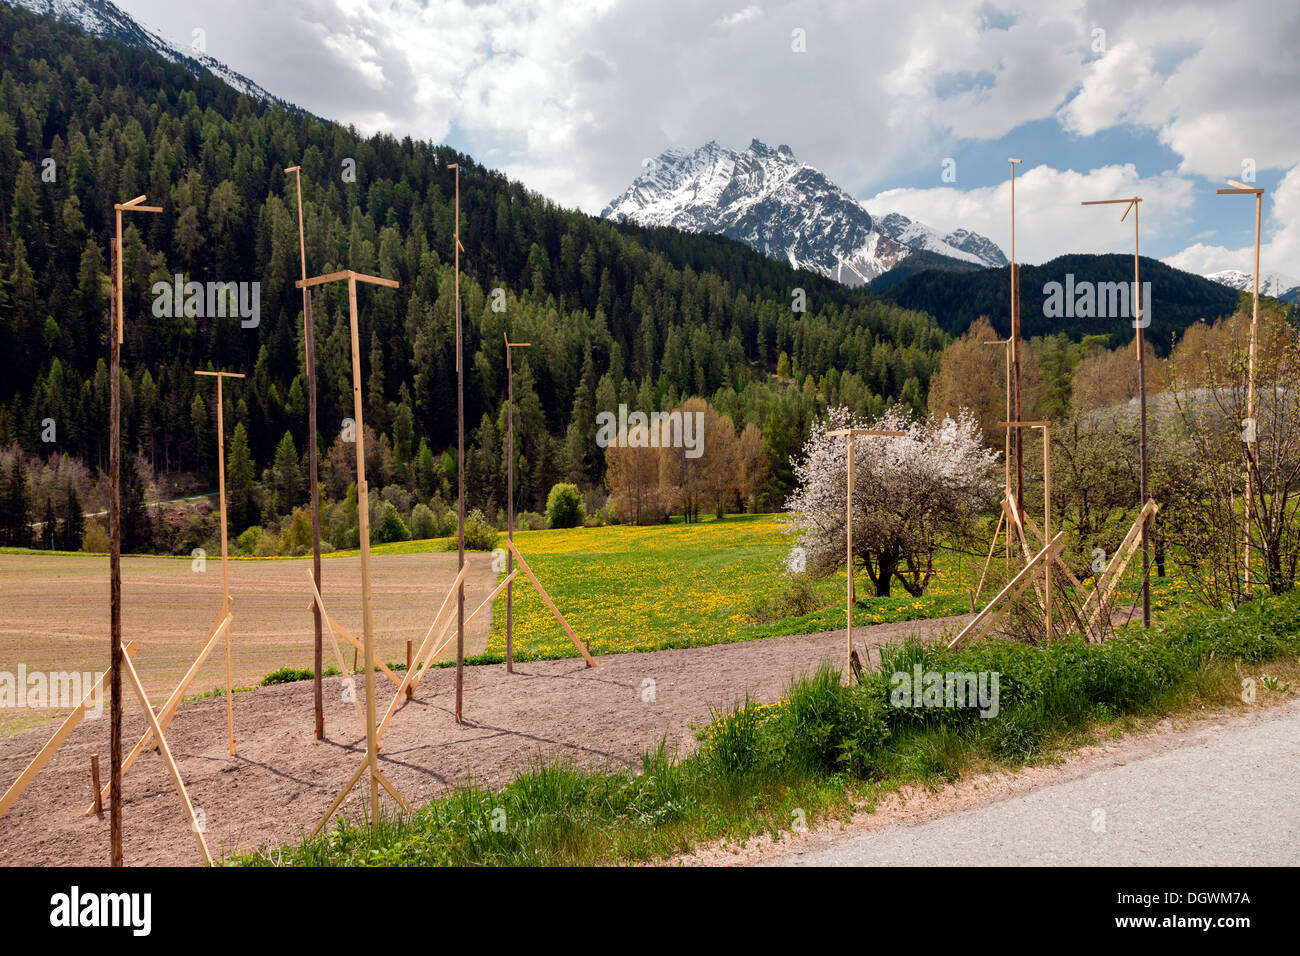 Las líneas de referencia, bateador boards, apostados en el sitio de construcción, Scuol, cantón de Los Grisones, Suiza Foto de stock